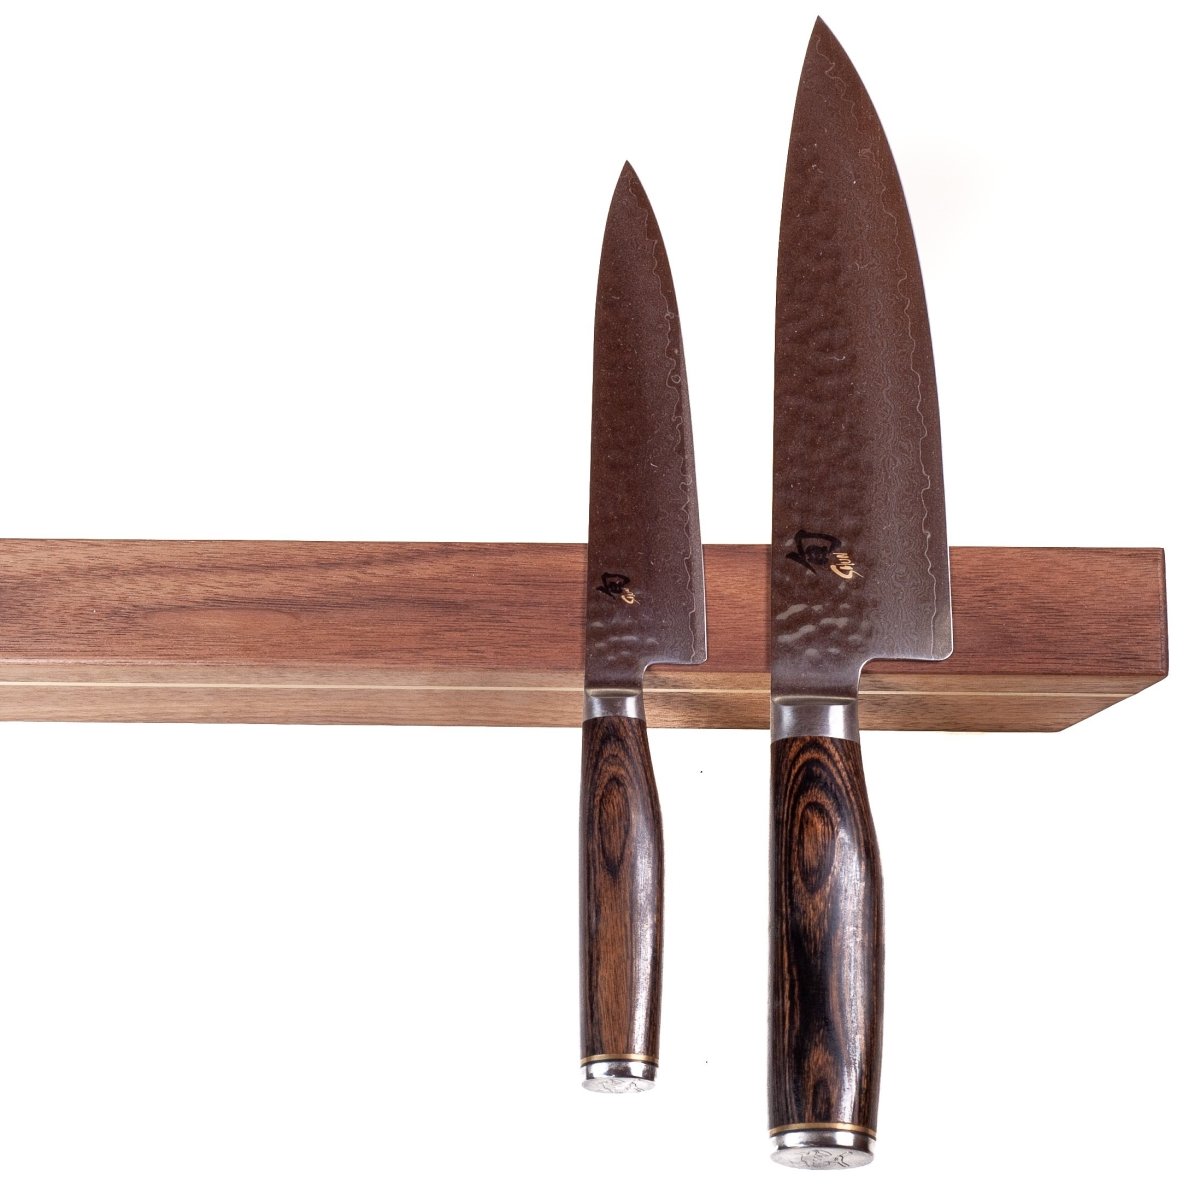 Rune-Jakobsen Woodworks 'Knifeboard Exclusive' dyb knivmagnet_2 by Rune-Jakobsen Design